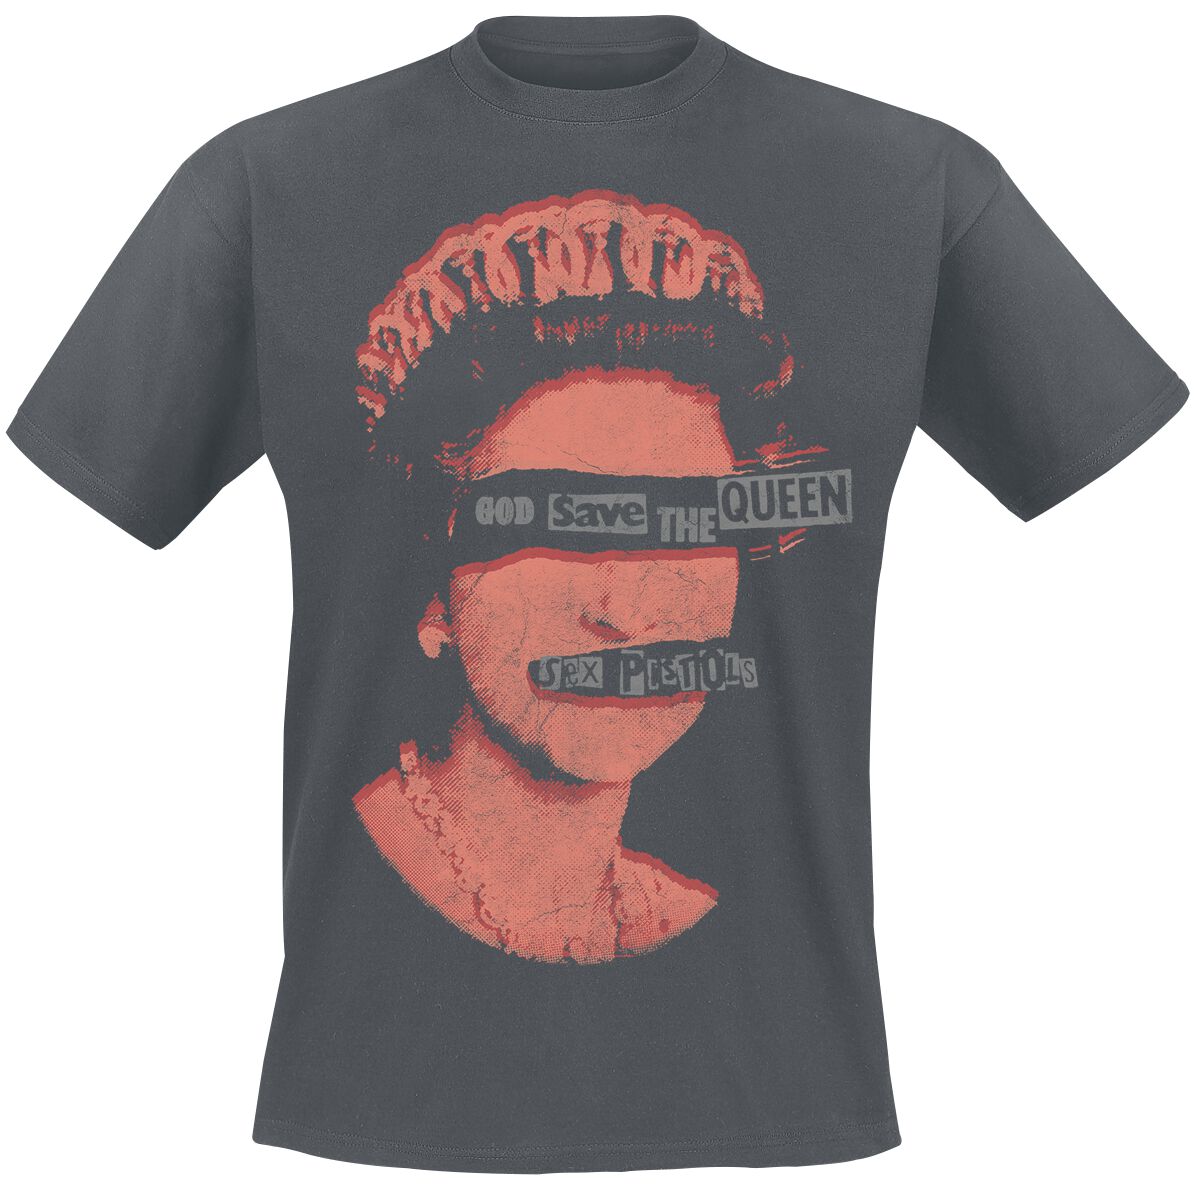 Sex Pistols T-Shirt - God Save The Queen - S bis XXL - für Männer - Größe M - dunkelgrau  - Lizenziertes Merchandise!